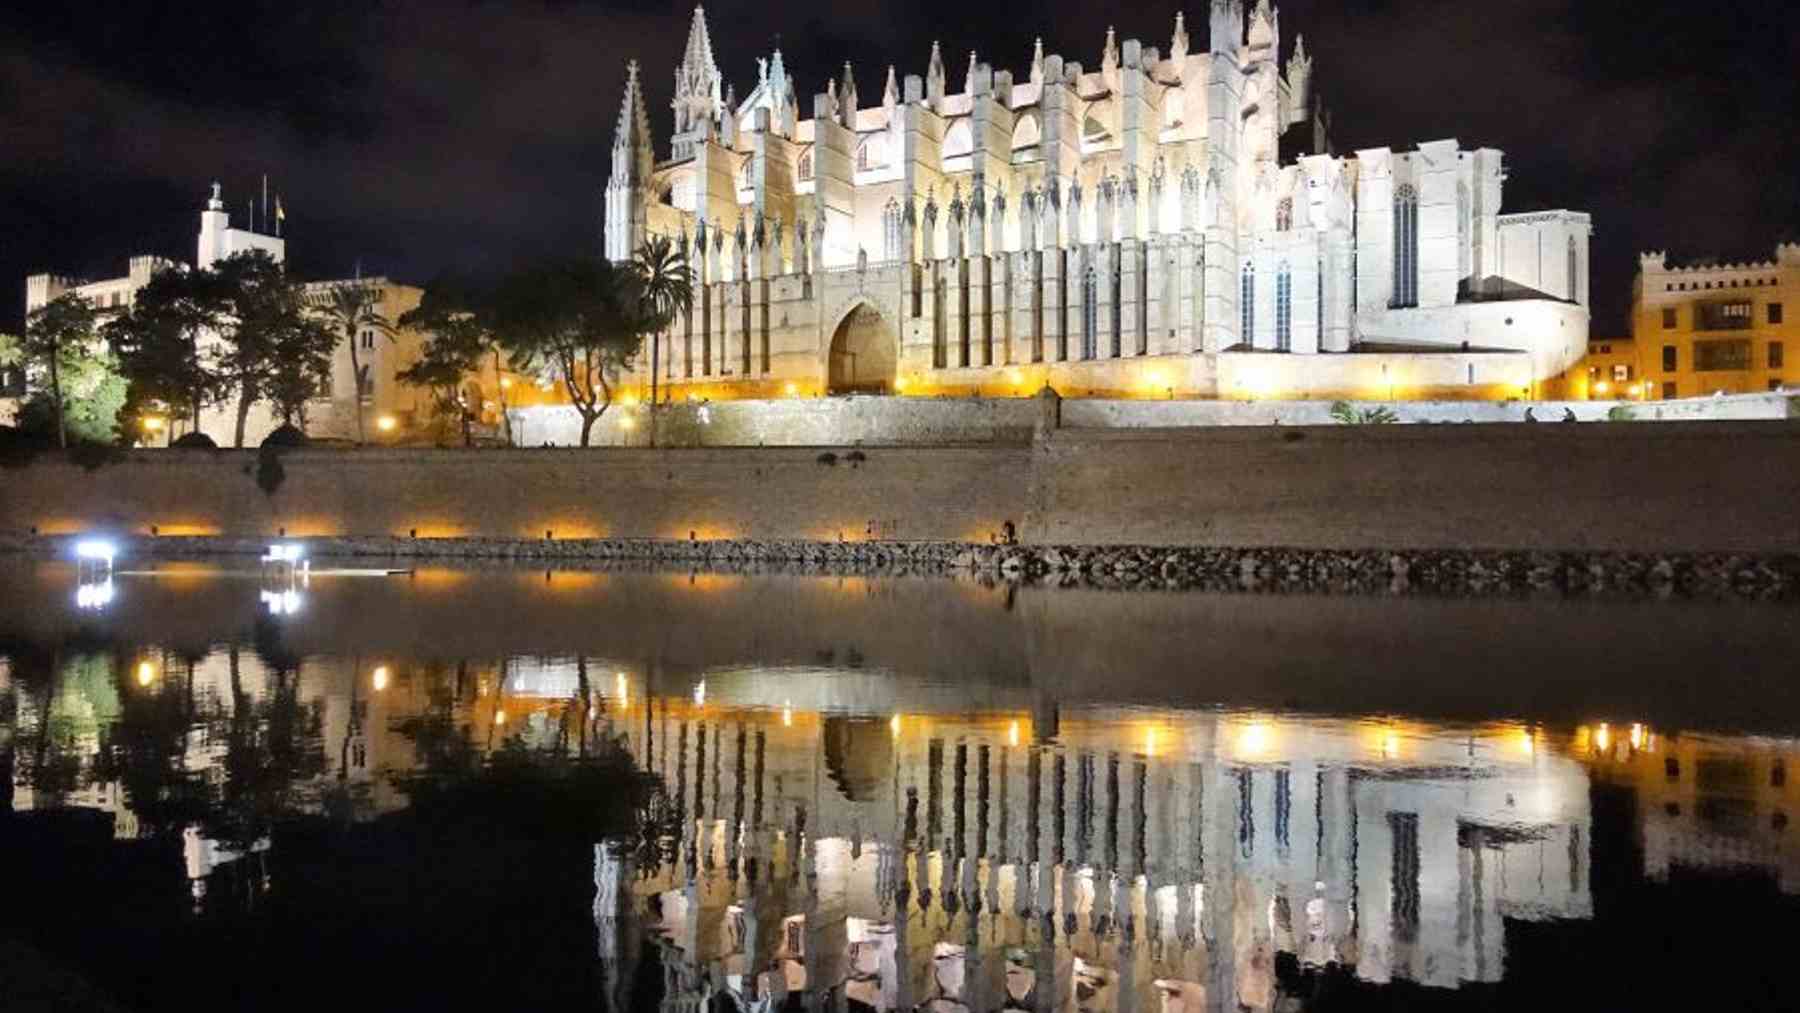 La catedral de Palma iluminada de noche.